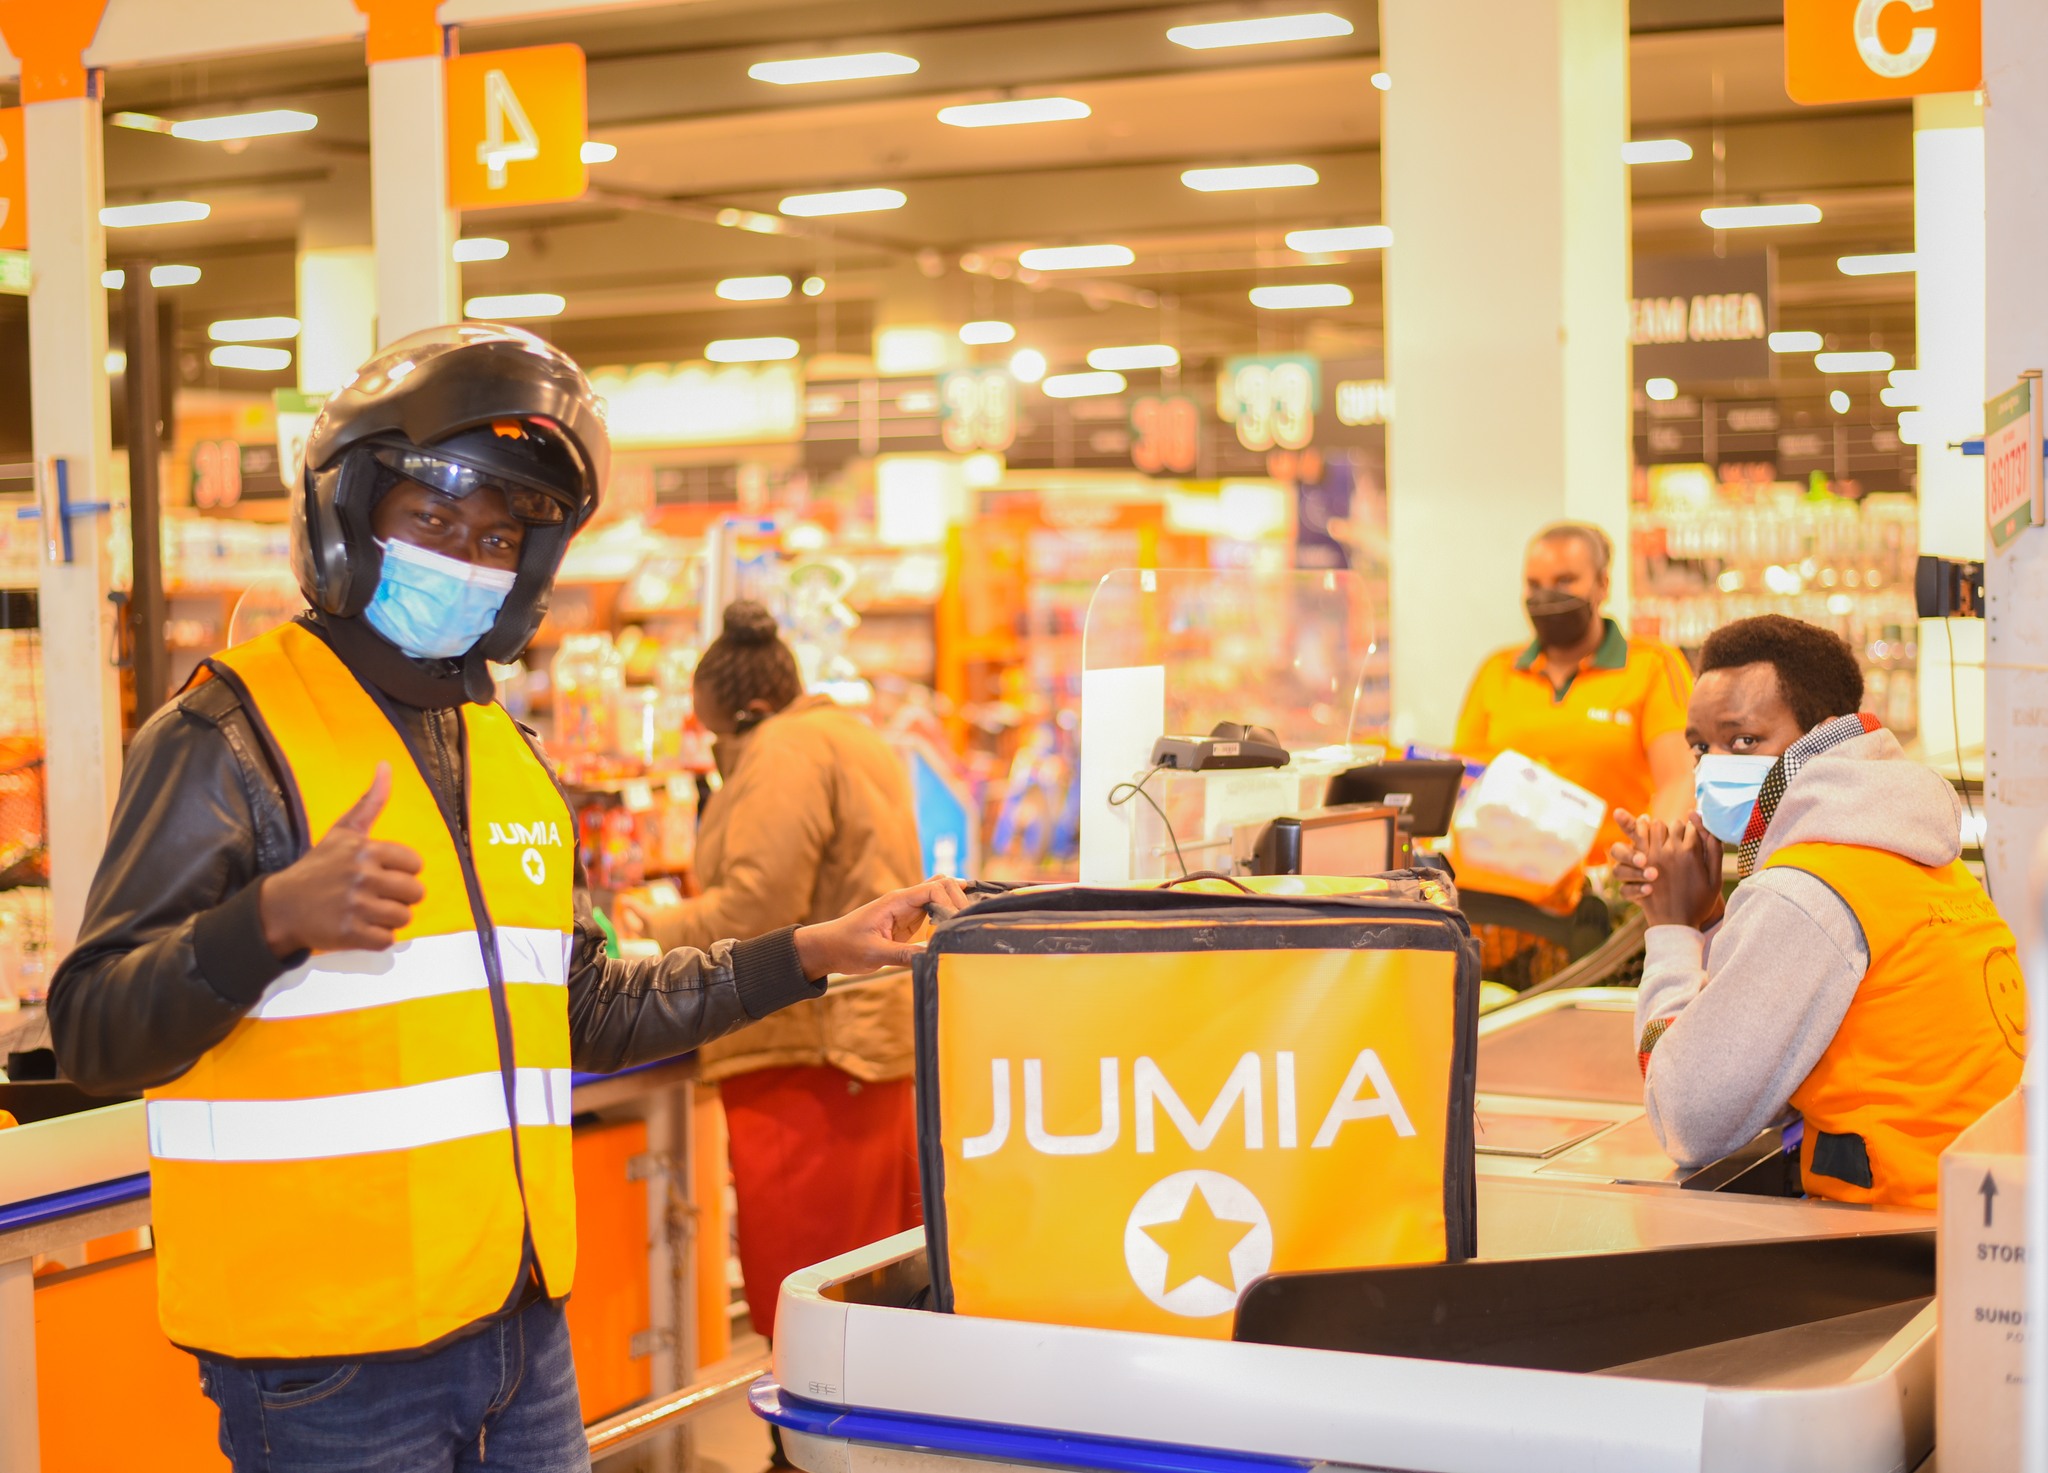 Jumia Food Kenya